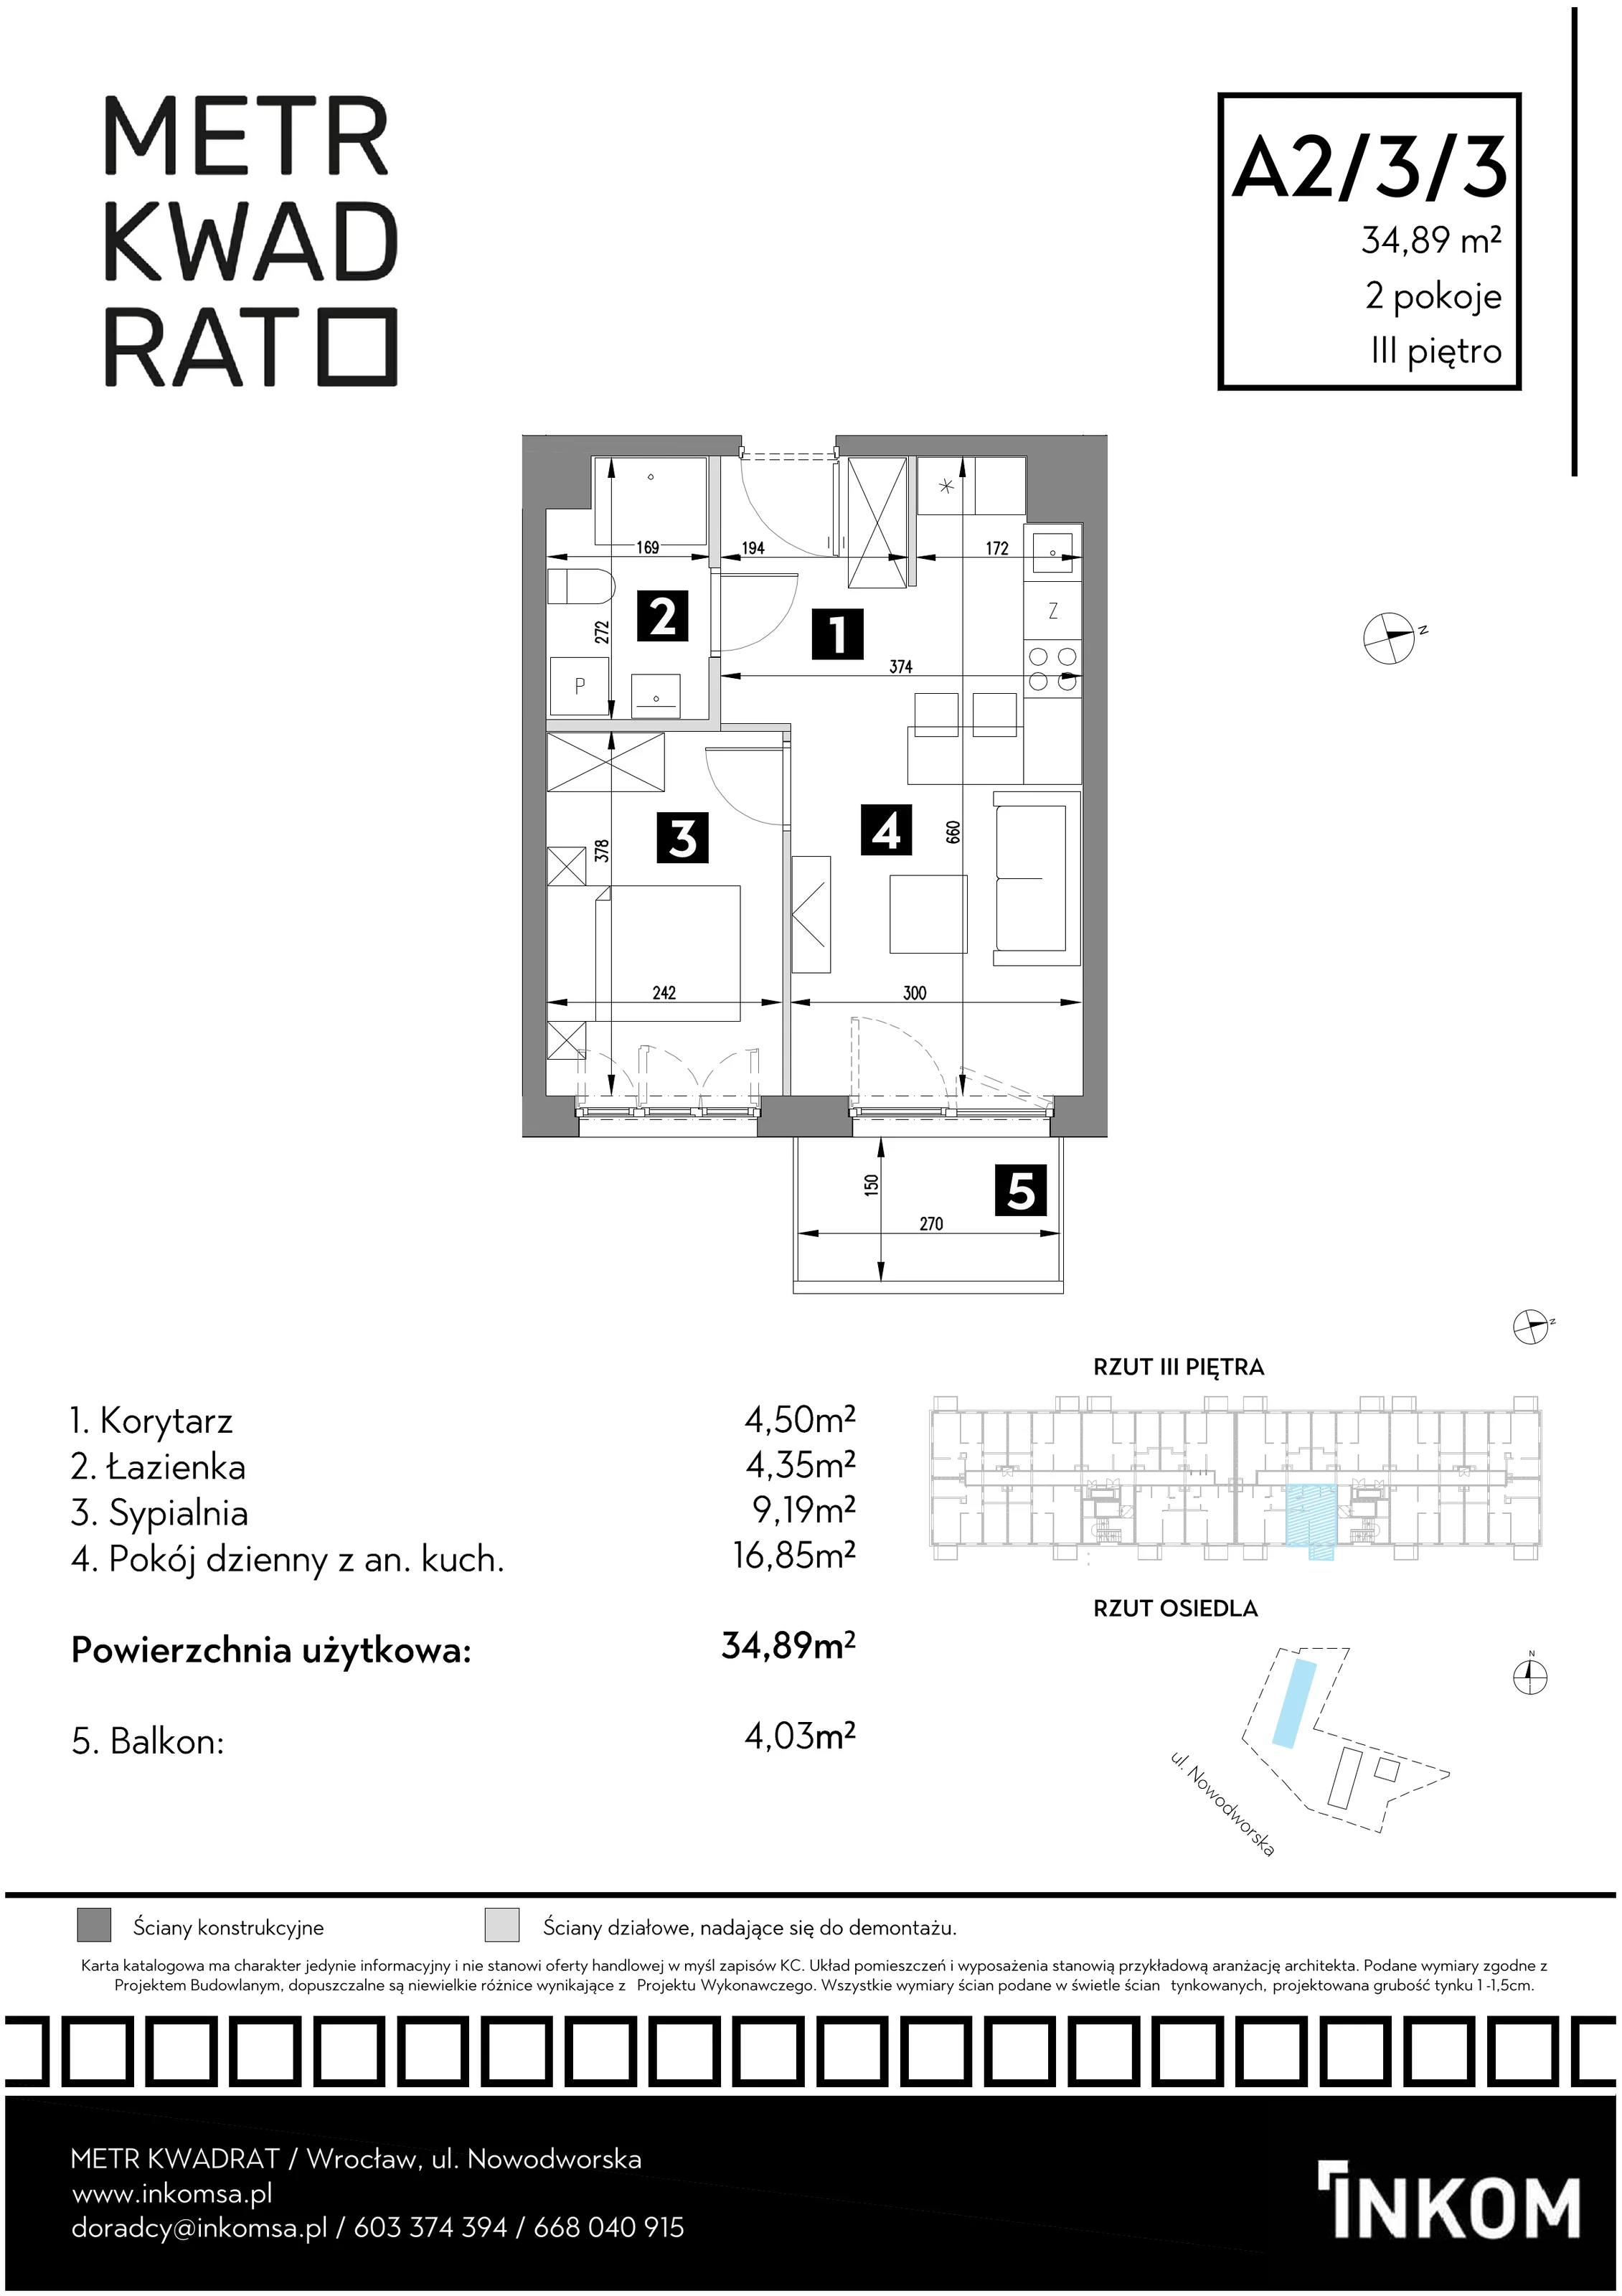 Mieszkanie 34,89 m², piętro 3, oferta nr A2/3/3, Metr Kwadrat, Wrocław, Nowy Dwór, ul. Nowodworska 17B